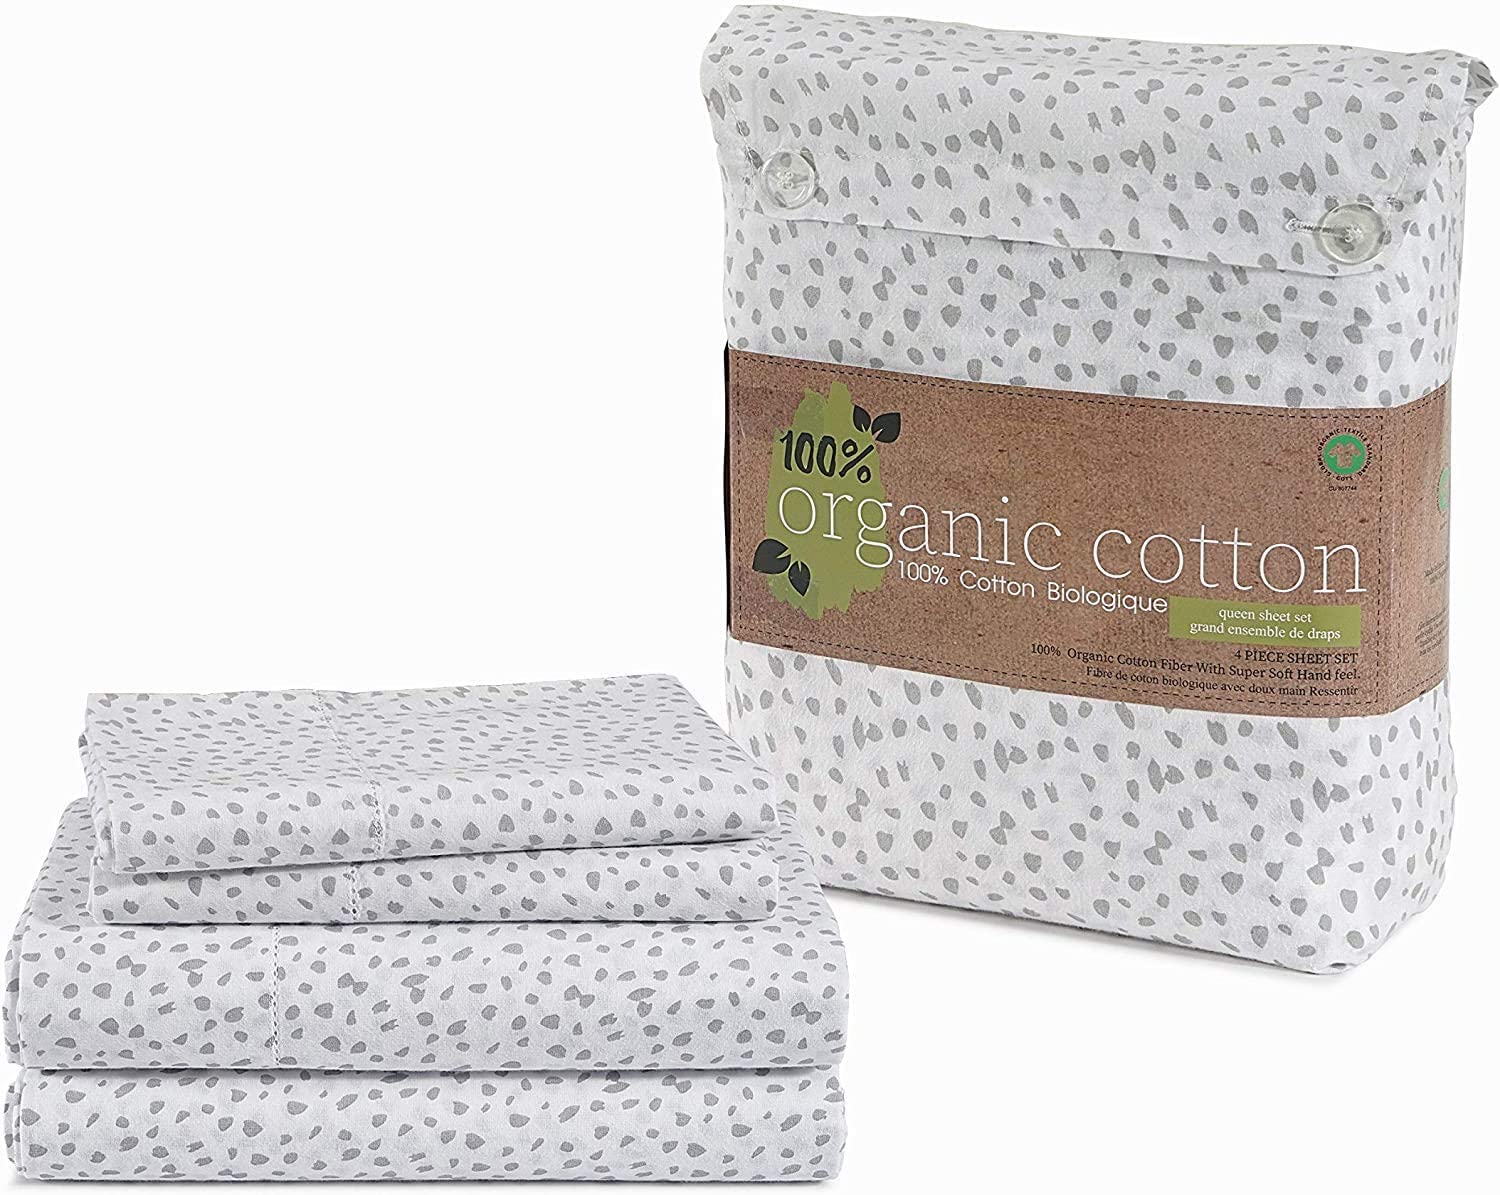 Details about   100% Organic Cotton Sepia Rose Queen-Sheets Set 4-Piece Pure Organic Cotton Lon 